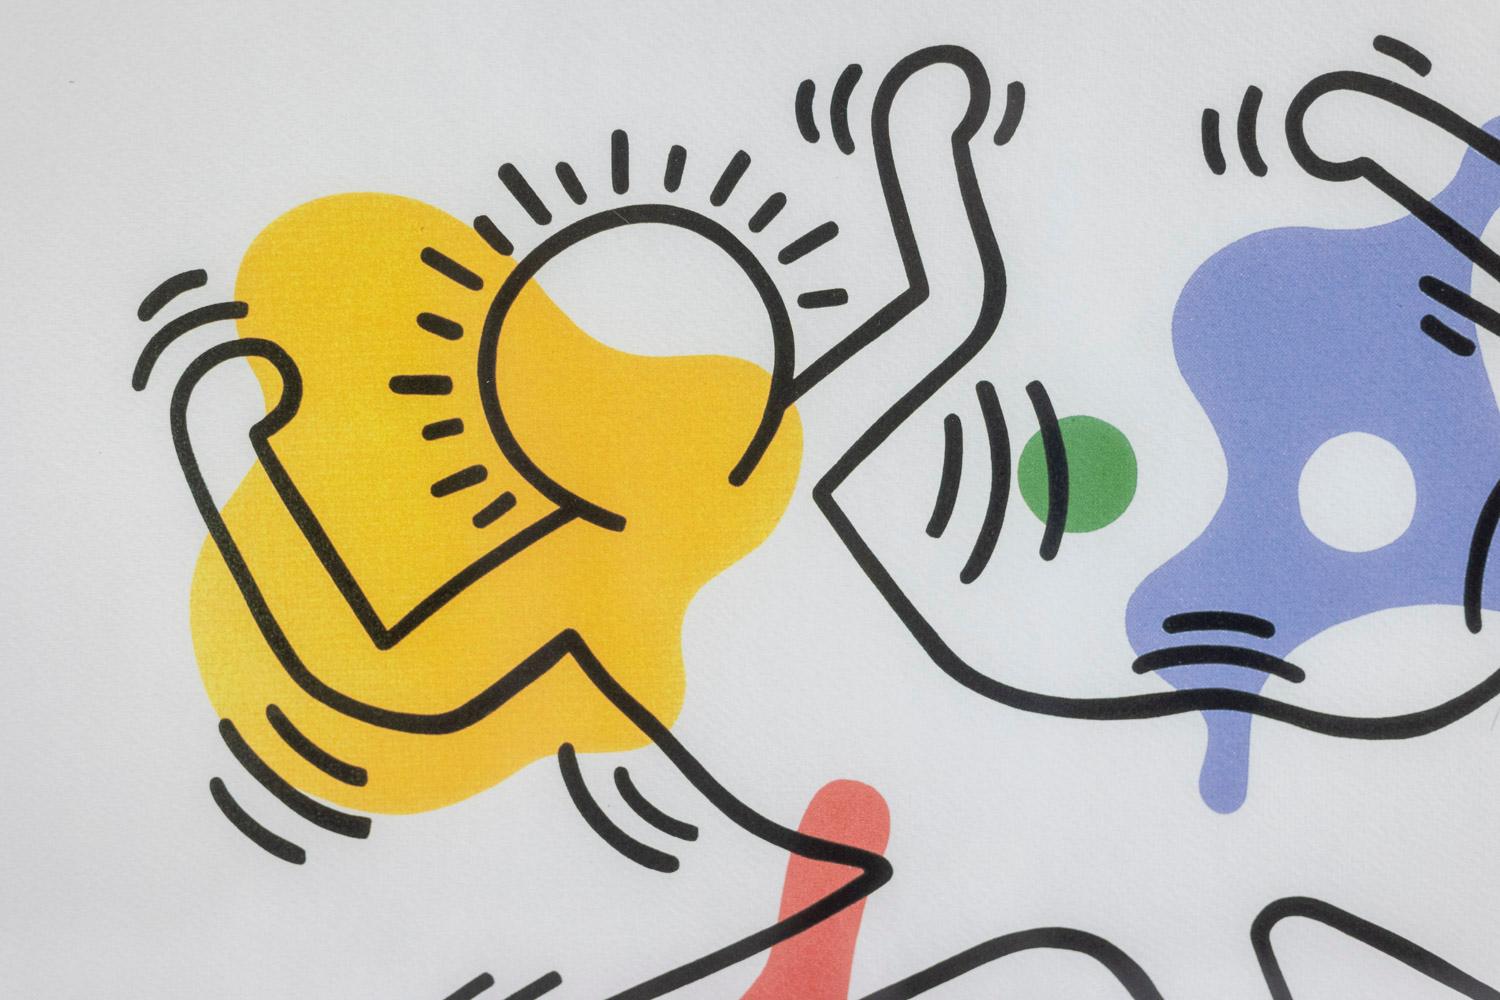 Keith Haring, signé et numéroté.

Sérigraphie abstraite, suggérant des figures schématiques, dans des tons multicolores dans son cadre en chêne blond.

Numéroté 75/150.

Œuvre américaine réalisée dans les années 1990.

Dimensions : L 50 x H 70 x P 2